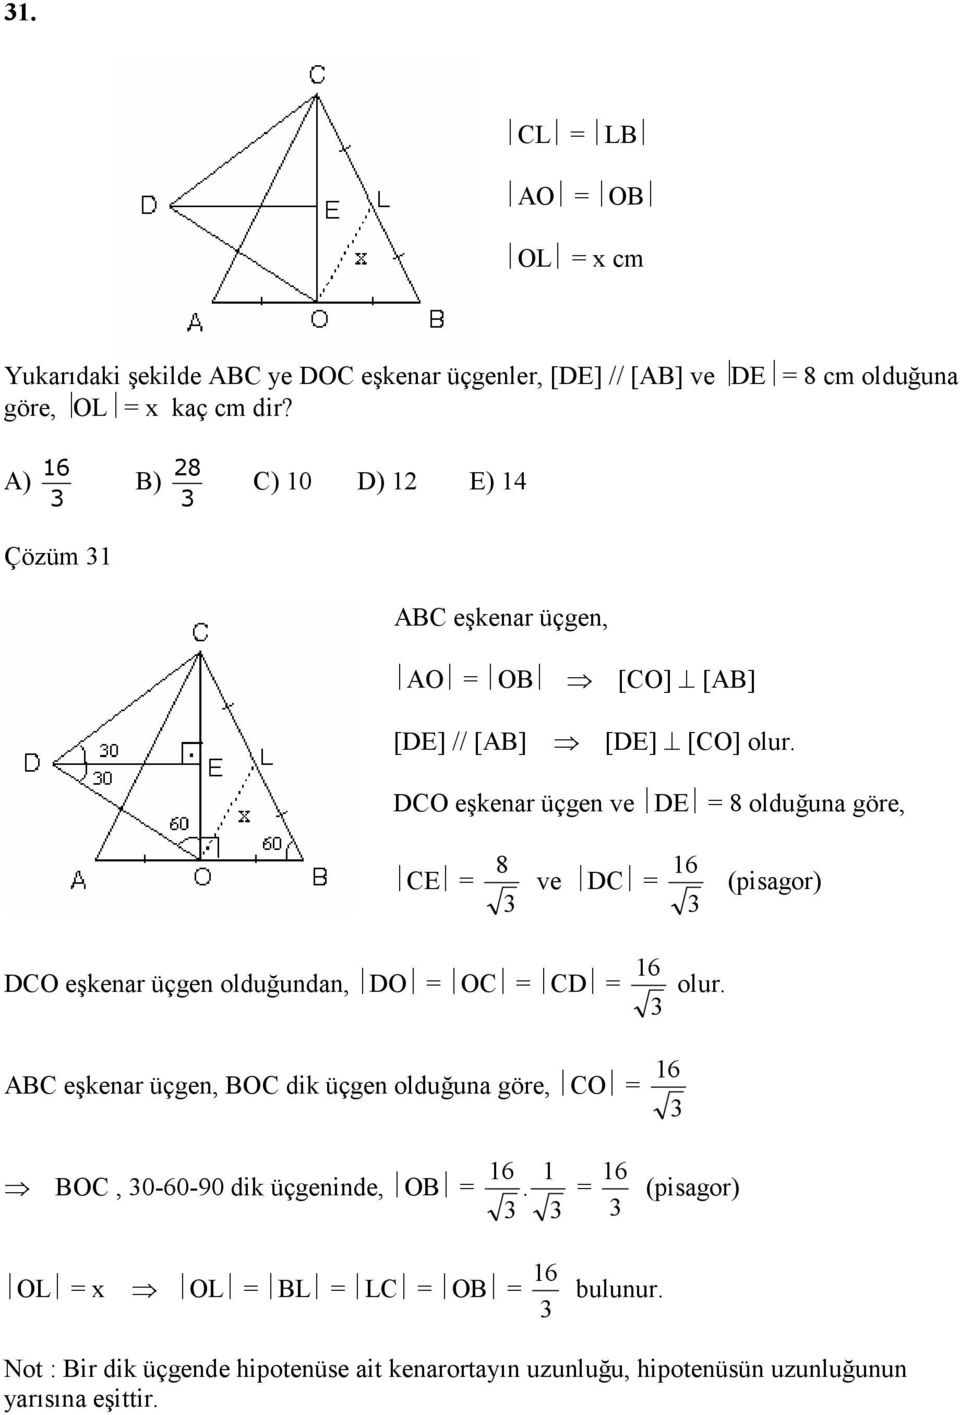 DCO eşkenar üçgen ve DE 8 olduğuna göre, CE 8 ve DC 6 (pisagor) DCO eşkenar üçgen olduğundan, DO OC CD 6 olur.